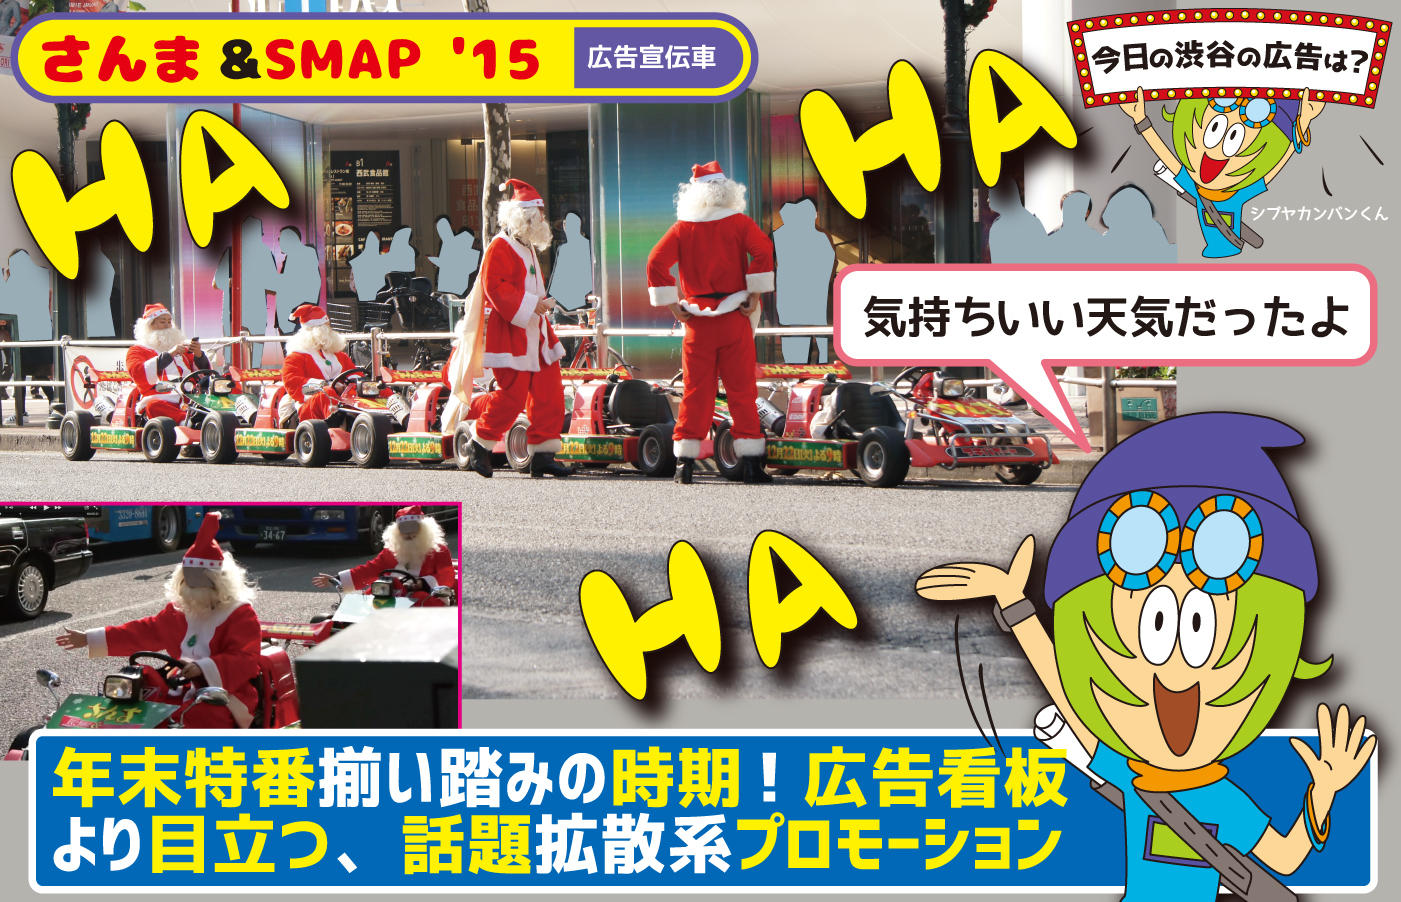 さんま Smap 15 年末特番揃い踏みの時期 広告看板より目立つ 話題拡散系プロモーション 今日の渋谷の広告は 看板 ポスター デジタル 車